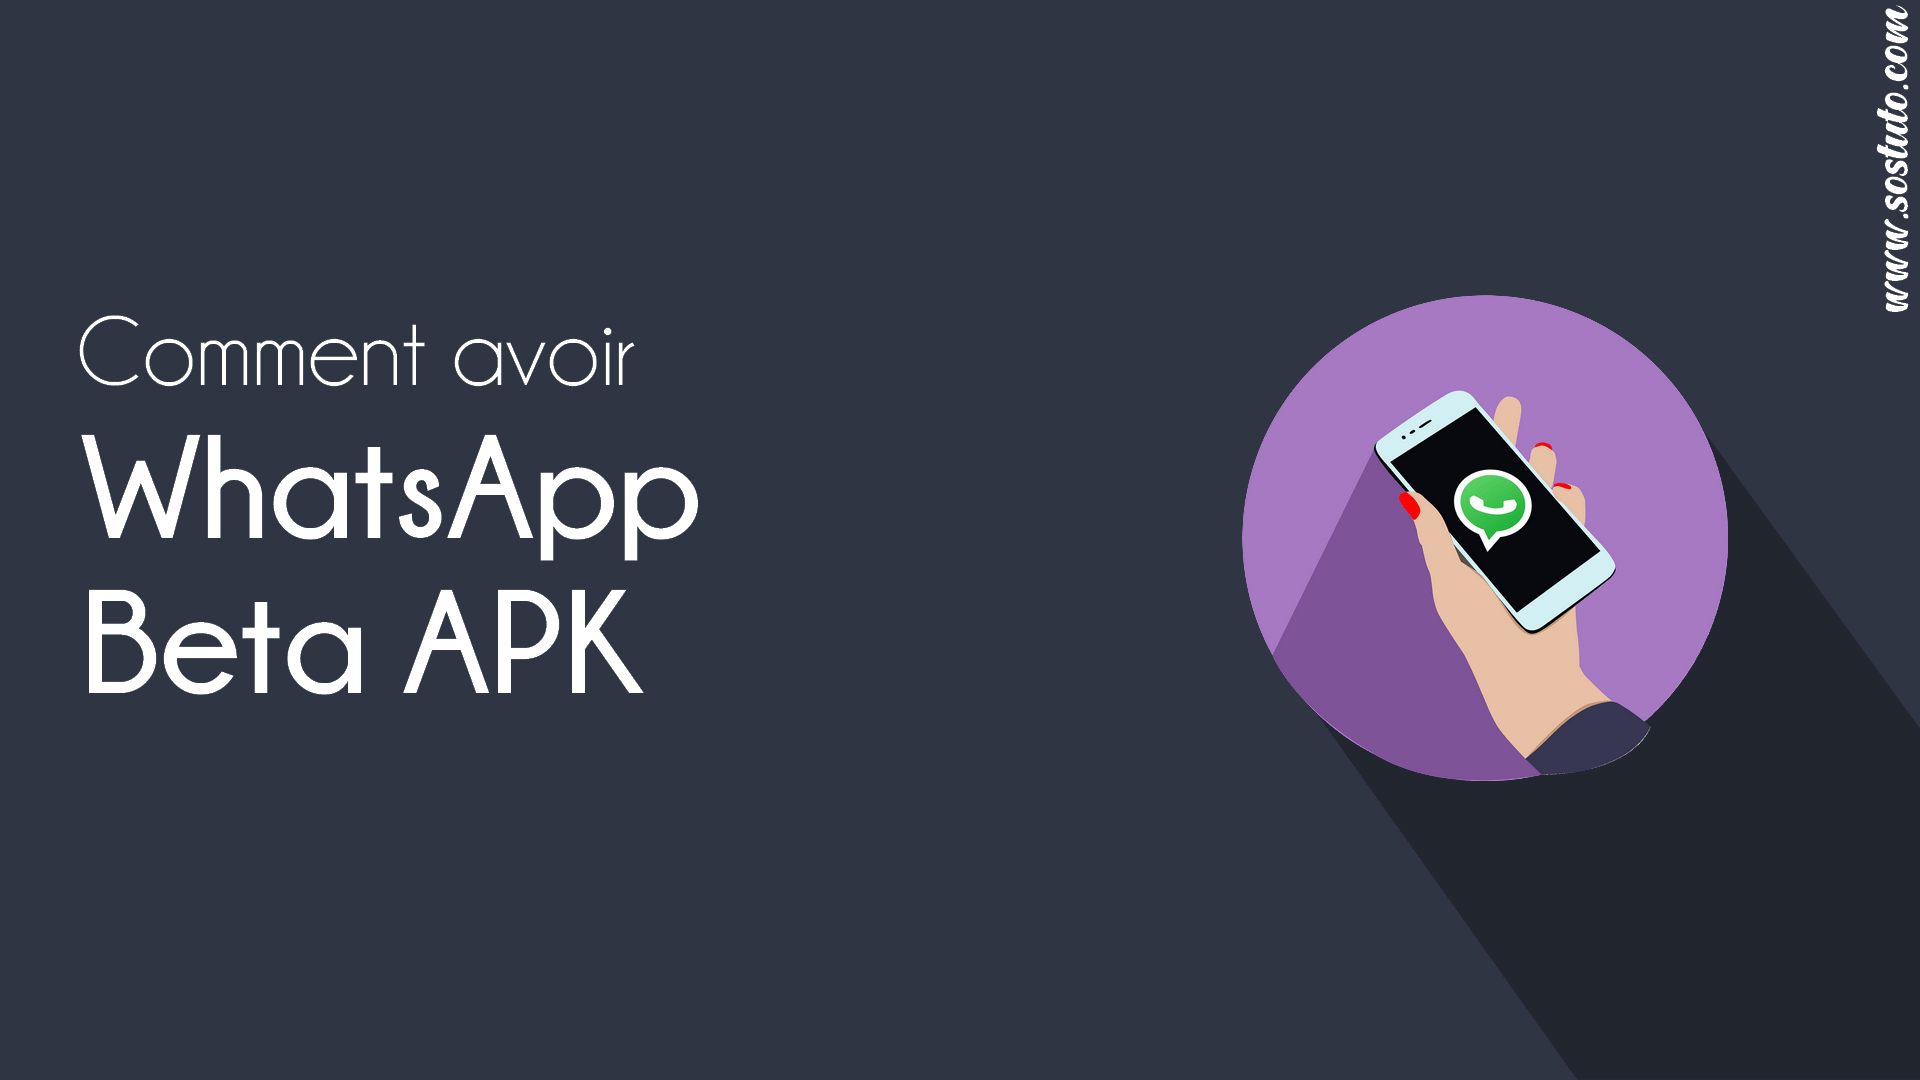 WhatsApp Beta APK Comment Avoir WhatsApp Beta APK avec & sans s’inscrire au programme Bêta